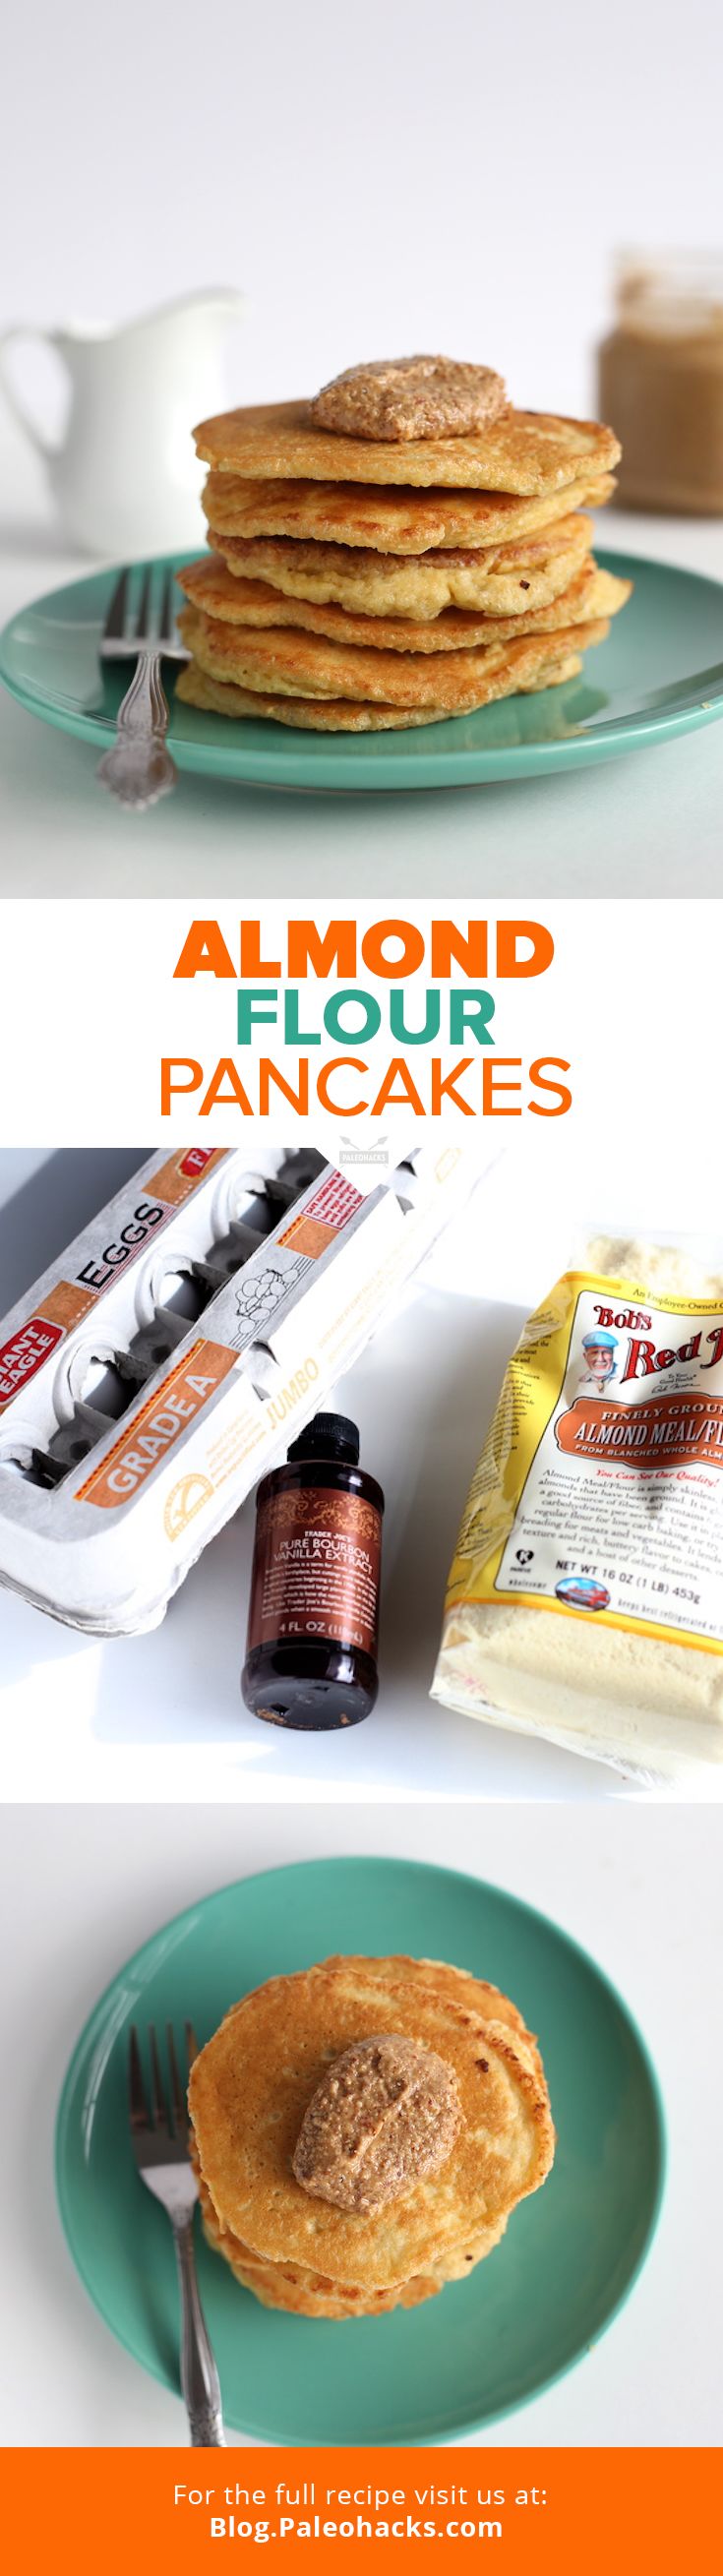 pin_almond-flour-pancakes